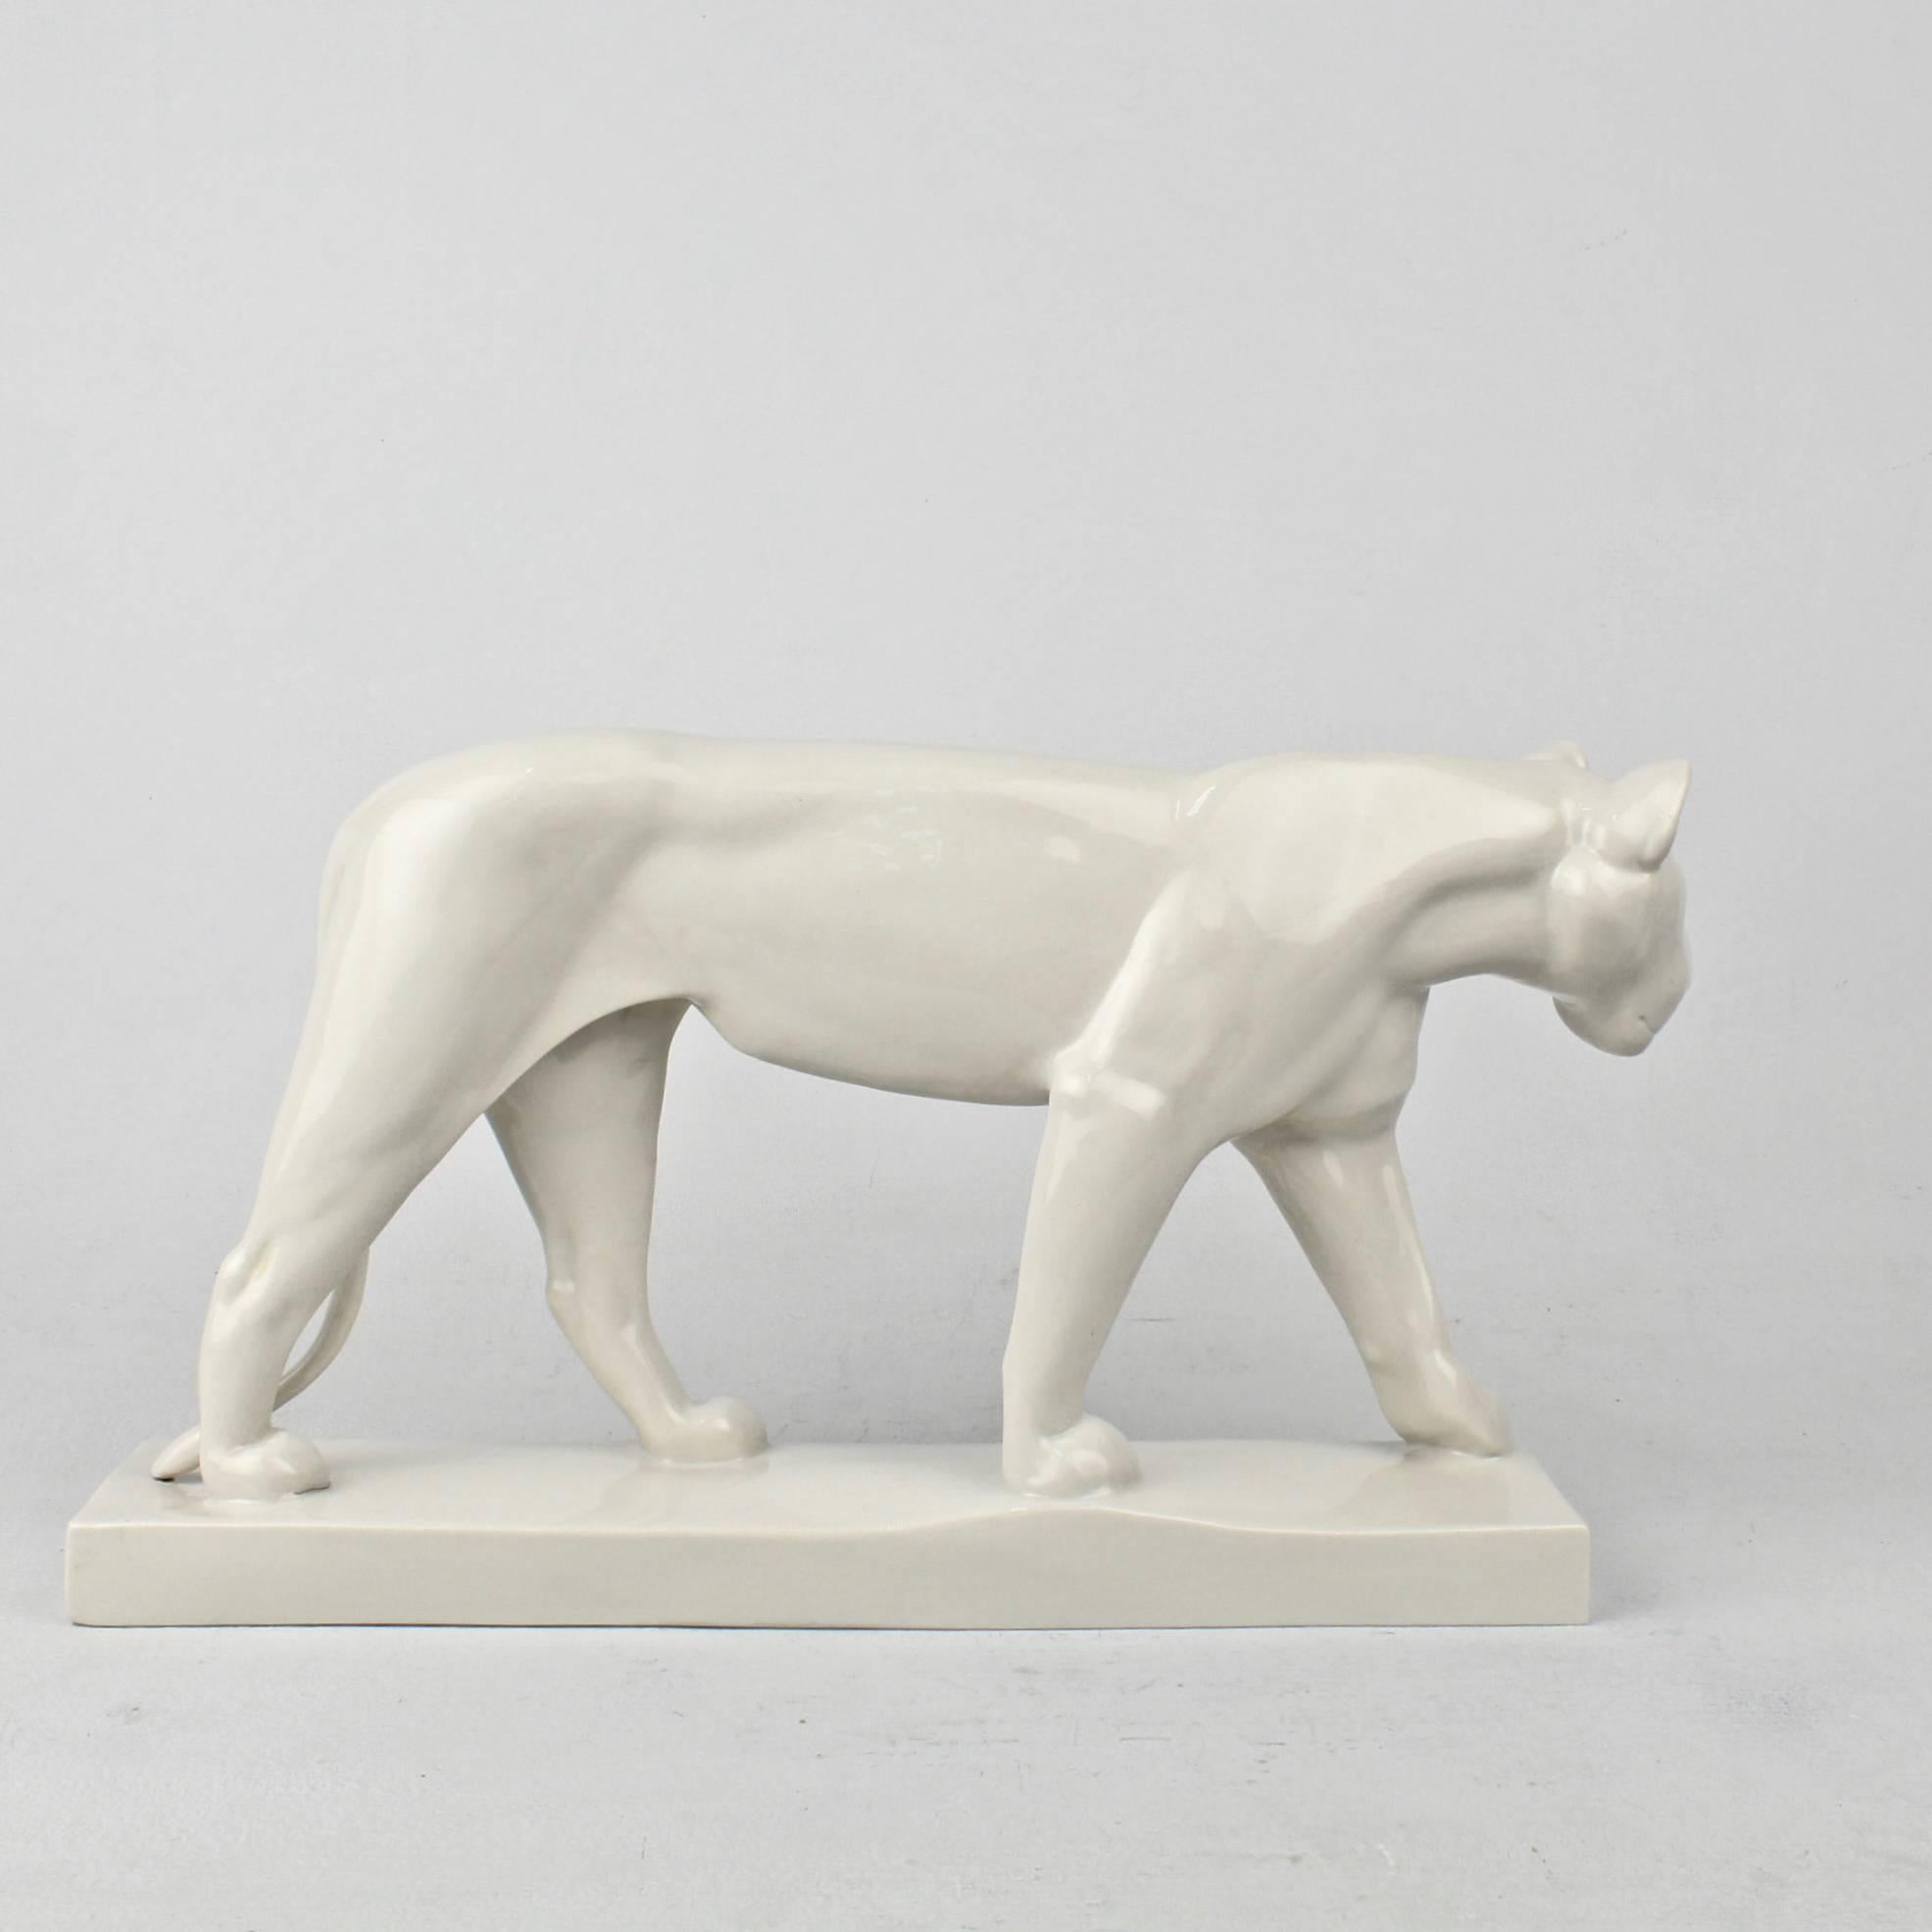 Cast Jugendstil White Porcelain Lion Figurine by Gerhard Marcks for Schwarzburger